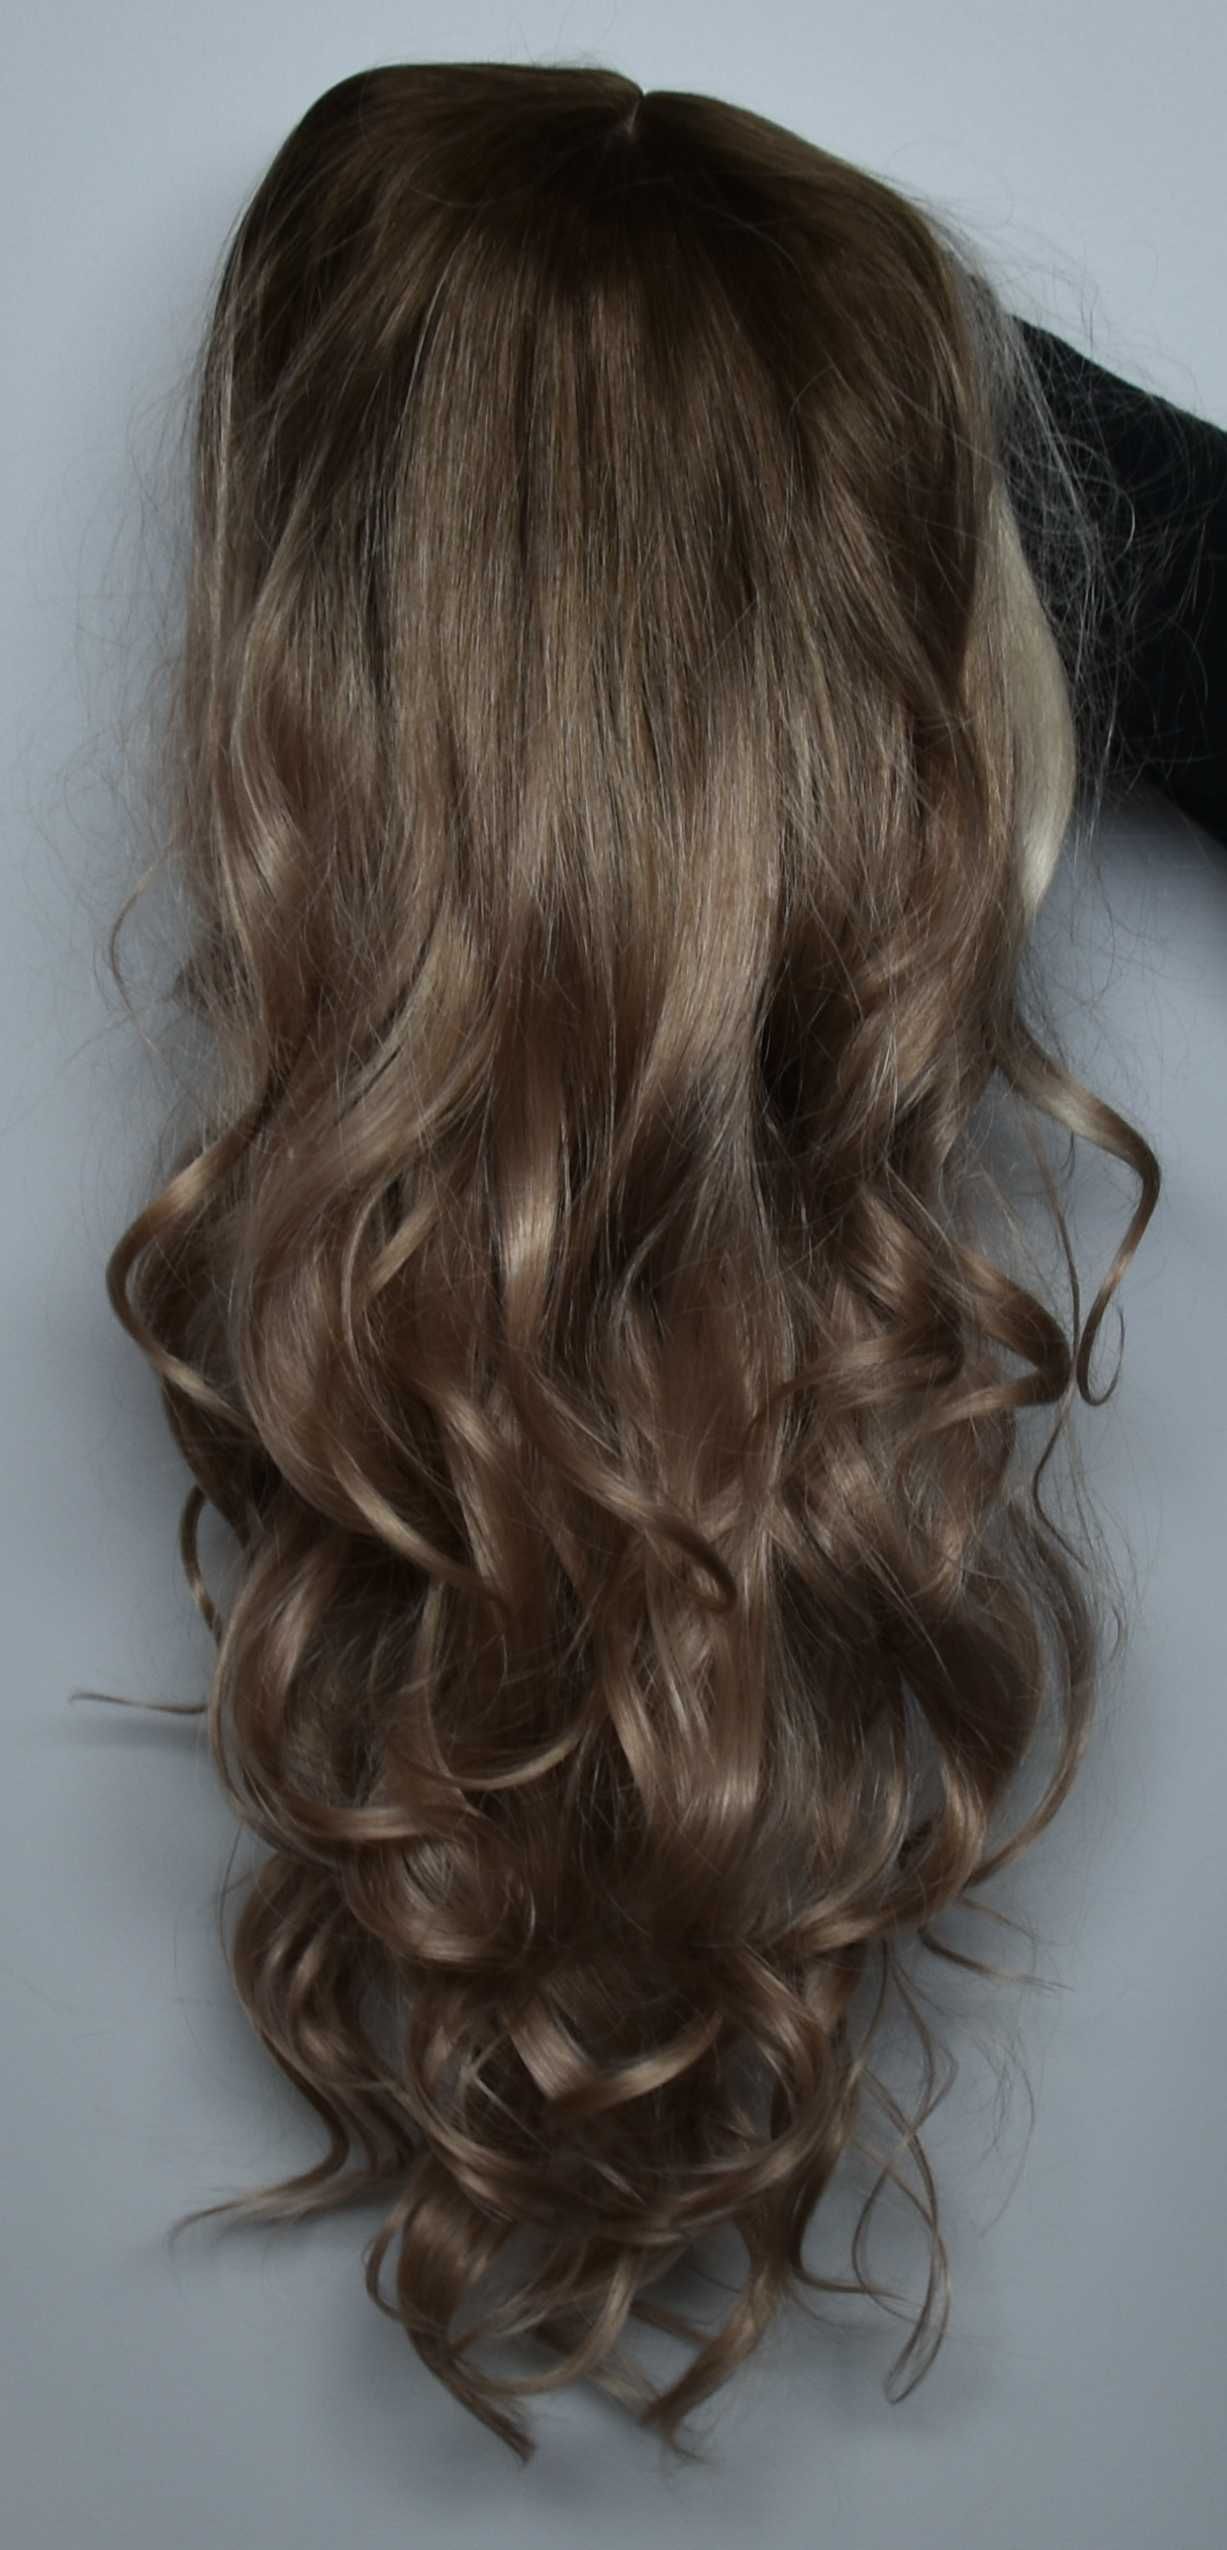 Nowa peruka premium - bardzo długie naturalne włosy